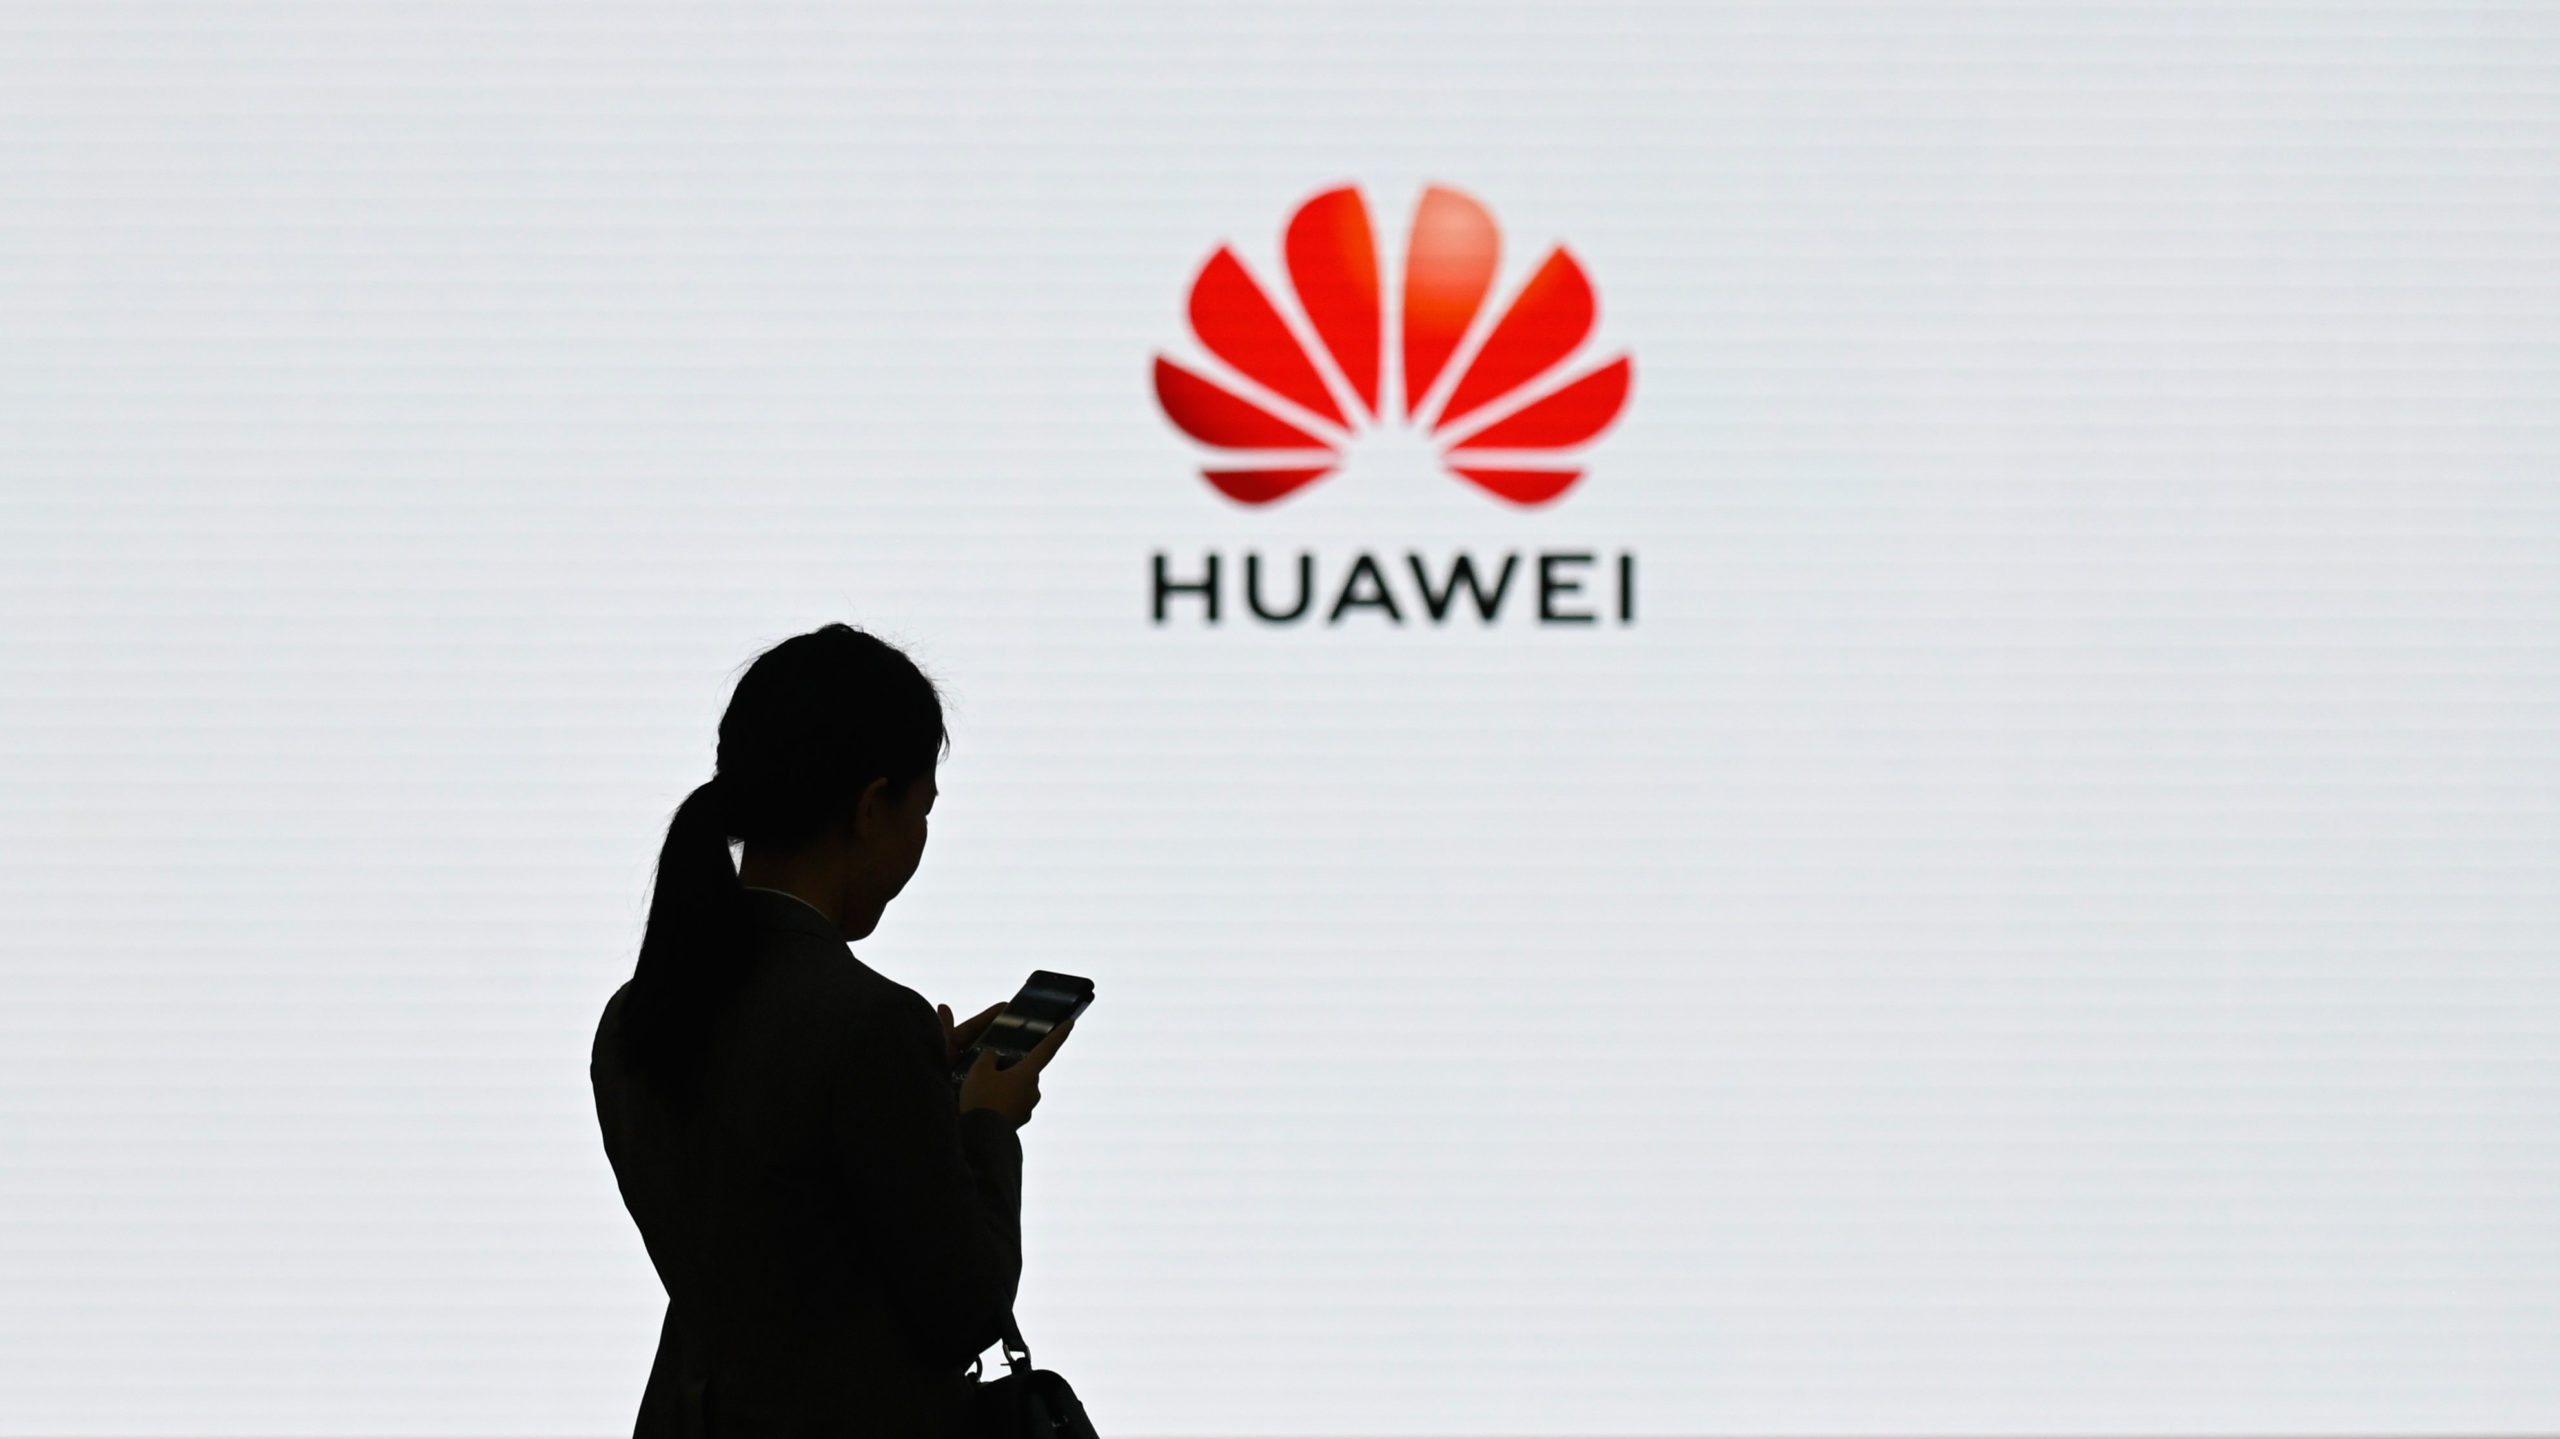 A marca chinesa Huawei pode chegar com mais um lançamento inédito! Venha conferir qual será. Você já conhece os aparelhos da marca chinesa Huawei? Apesar de ainda não estar entre as mais populares no Brasil, ela promete se destacar e proporcionar muitos produtos de qualidade. Ano passado (2023) a empresa lançou o Mate 60, que fez grande sucesso no exterior, e esse ano ela promete ainda mais. A seguir, iremos te apresentar o que mais de lançamento pode estar por vir por parte da marca chinesa Huawei. Então, vamos conferir? Segue o fio! Huawei: marca chinesa pode chegar com mais um lançamento inédito! De fato, a marca Huawei está se preparando para surpreender o mercado com uma série de novidades emocionantes que estão prestes a chegar às lojas. Entre elas, iremos destacar para você o tão aguardado modelo de dispositivo com tela tri-dobrável. Isso mesmo! E ele vem prometendo revolucionar a experiência do usuário. Também há rumores de que o Vision Pro, que é o headset de realidade mista da empresa, também será anunciado em breve, juntamente com os novos integrantes da linha P70 de aparelhos celulares. O que tem se falado nas redes sociais chinesas sobre o assunto Na rede social chinesa Weibo, as informações que estão circulando indicam que o lançamento do dispositivo dobrável está próximo, com expectativas de que seja equipado com telas fabricadas pela BOE, nada menos do que uma renomada empresa do setor. Qualidade e durabilidade do aparelho tri-dobrável Além disso, as dobradiças do modelo são produzidas pelas marcas Zhaoli e Fusda, garantindo qualidade e durabilidade ao produto final. A Huawei, seguindo seu compromisso com a excelência, já teria iniciado a aquisição em larga escala de materiais para a produção do aparelho, visando atender à demanda e superar as expectativas dos consumidores. Óculos de realidade mista Os óculos de realidade mista, que compartilham o mesmo nome do modelo da Apple, estão gerando bastante interesse entre os entusiastas da tecnologia. Já existem especulações de que esses óculos poderão ser equipados com um chip de última geração, projetado para proporcionar uma experiência imersiva superior, combinada com um desempenho excepcional. Cuidados e melhorias A marca chinesa ainda está concentrando esforços no sistema de refrigeração do dispositivo, reconhecendo que o calor gerado pode ser uma preocupação durante longos períodos de uso. Essa atenção aos detalhes demonstra o compromisso da empresa em oferecer produtos de alta qualidade e conforto para os usuários. No entanto, assim como ocorre com o modelo dobrável, as especificações técnicas exatas ainda não foram reveladas, deixando espaço para especulações e antecipação entre os consumidores. Modelo do aparelho - o que já sabemos Até o momento, o que temos são algumas ilustrações provenientes da patente registrada pela Huawei, oferecendo uma visão intrigante do que poderia ser o celular com tela tri-dobrável da empresa. As imagens sugerem um dispositivo composto por três telas que se dobram duas vezes, resultando em um design compacto, embora possa apresentar uma espessura considerável quando dobrado. Uma característica interessante revelada nas ilustrações é a configuração em formato de Z das dobras do celular, o que indica a possibilidade de utilizar o dispositivo com apenas dois de seus três displays disponíveis. Além disso, a diferença de espessura entre as telas sugere um esforço para reduzir o volume quando dobrado. Câmera Outro ponto destacado é a localização do módulo de câmeras na traseira do primeiro painel, com o segundo display apresentando uma região em baixo-relevo para acomodar os sensores fotográficos sem interferir no processo de dobra. No entanto, é importante ressaltar que as ilustrações da patente não revelam detalhes sobre as especificações técnicas do dispositivo, deixando espaço para especulações e curiosidade entre os consumidores. Afinal, está confirmado? Embora ainda não haja confirmação sobre o lançamento do produto, a frequência dos rumores sugere que a Huawei está preparando algo inovador para o mercado. Aguardemos por mais informações e novidades emocionantes da empresa para te informar em breve. Conclusão Para concluirmos, podemos dizer que as ilustrações da patente registrada pela Huawei revelam um potencial dispositivo com tela tri-dobrável, trazendo uma proposta inovadora para o mercado de aparelhos celulares. Embora as imagens ofereçam apenas uma visão preliminar do possível design, elas despertam o interesse dos consumidores em relação ao que a empresa pode estar planejando. E, mesmo que sem uma confirmação oficial sobre esse lançamento da marca chinesa, a frequência dos rumores sugere que a Huawei está explorando novas fronteiras tecnológicas e pode estar se preparando para apresentar algo único e emocionante aos consumidores. Você acredita em novidades ainda para este ano para a marca? Conta pra gente nos comentários e não deixe de acompanhar essa saga!